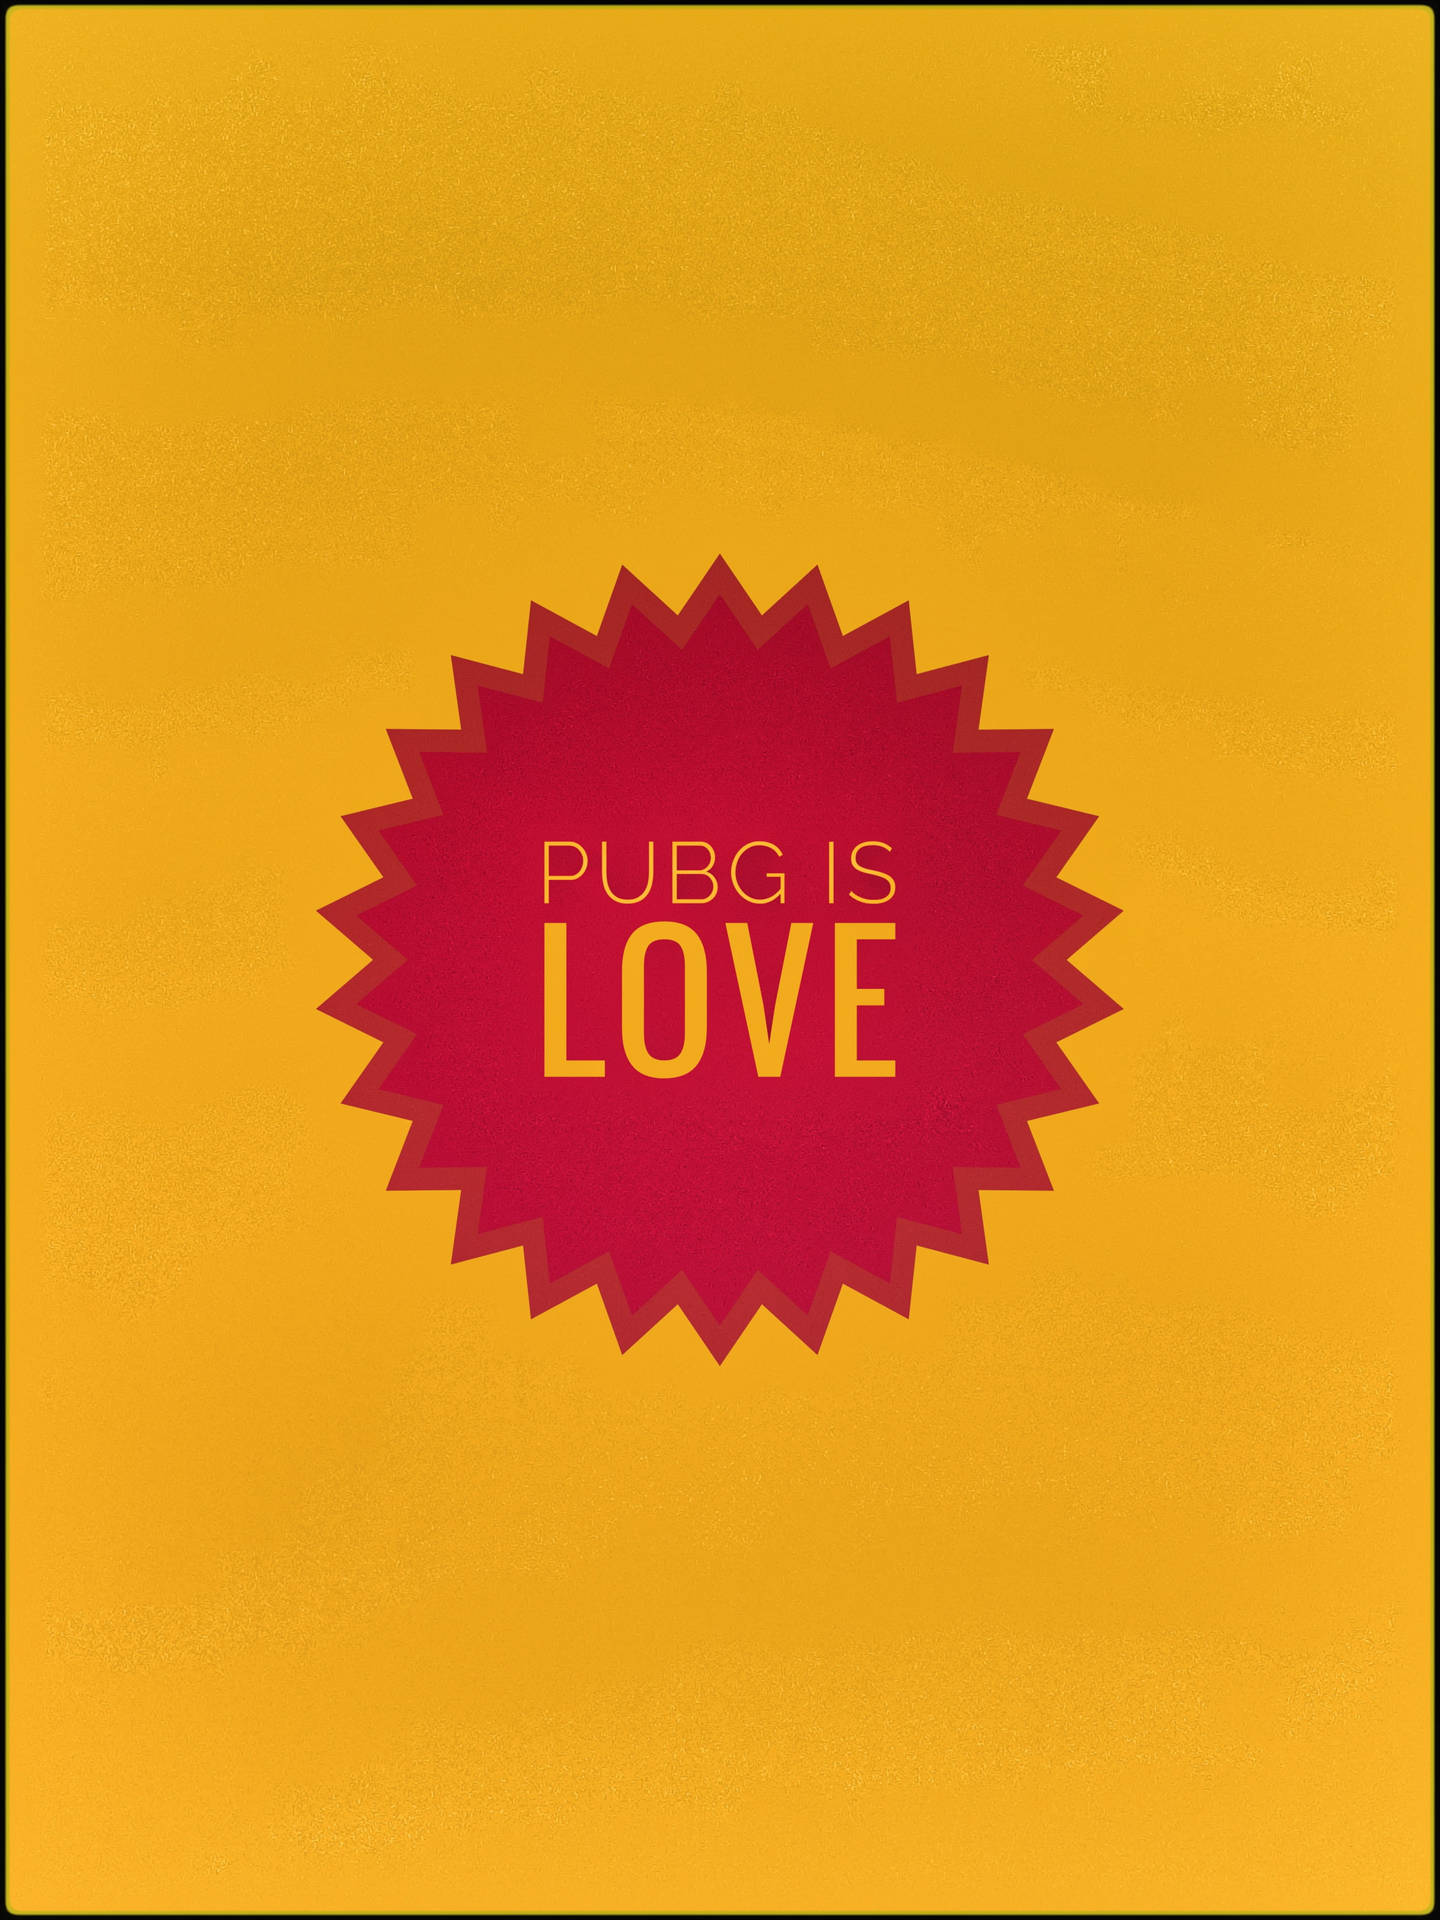 Pubg Lover Pubg Is Love Background